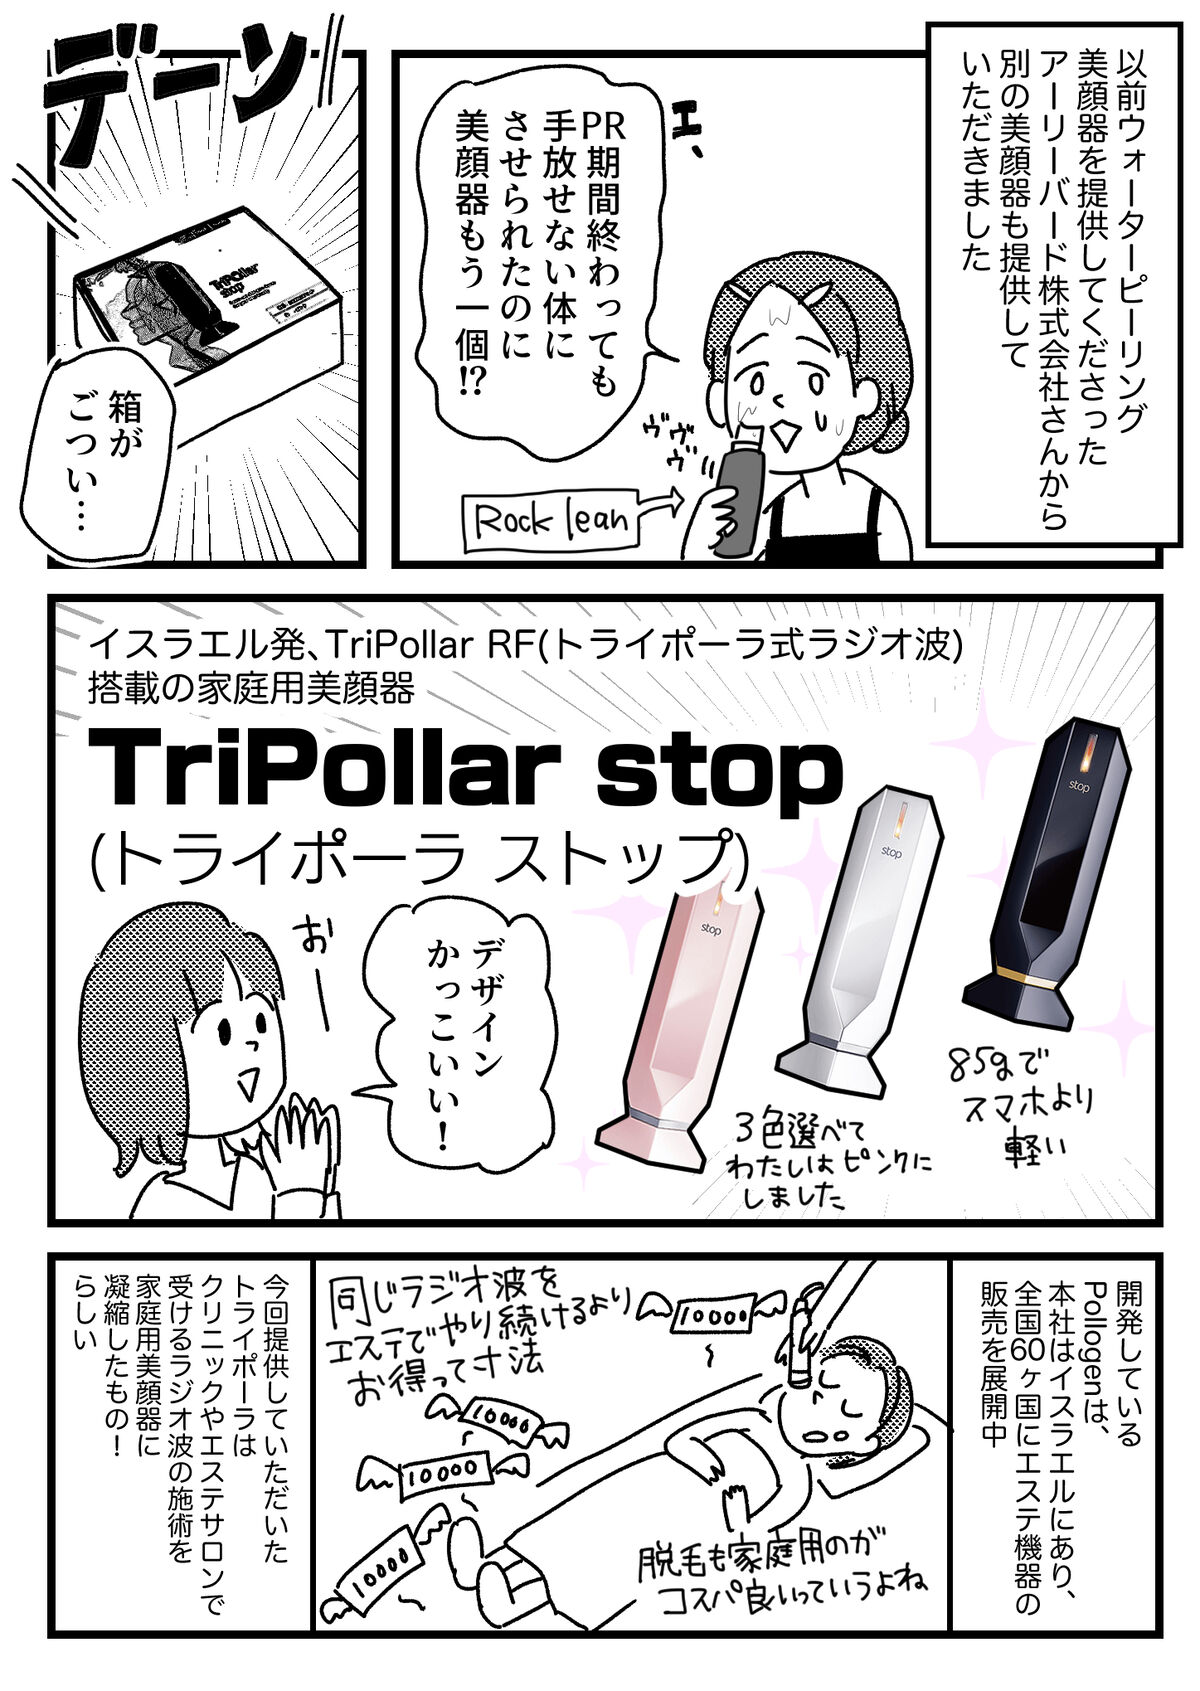 購入の正規品 トライポーラ ストップ 美顔器 TriPollar stop | vixan.no